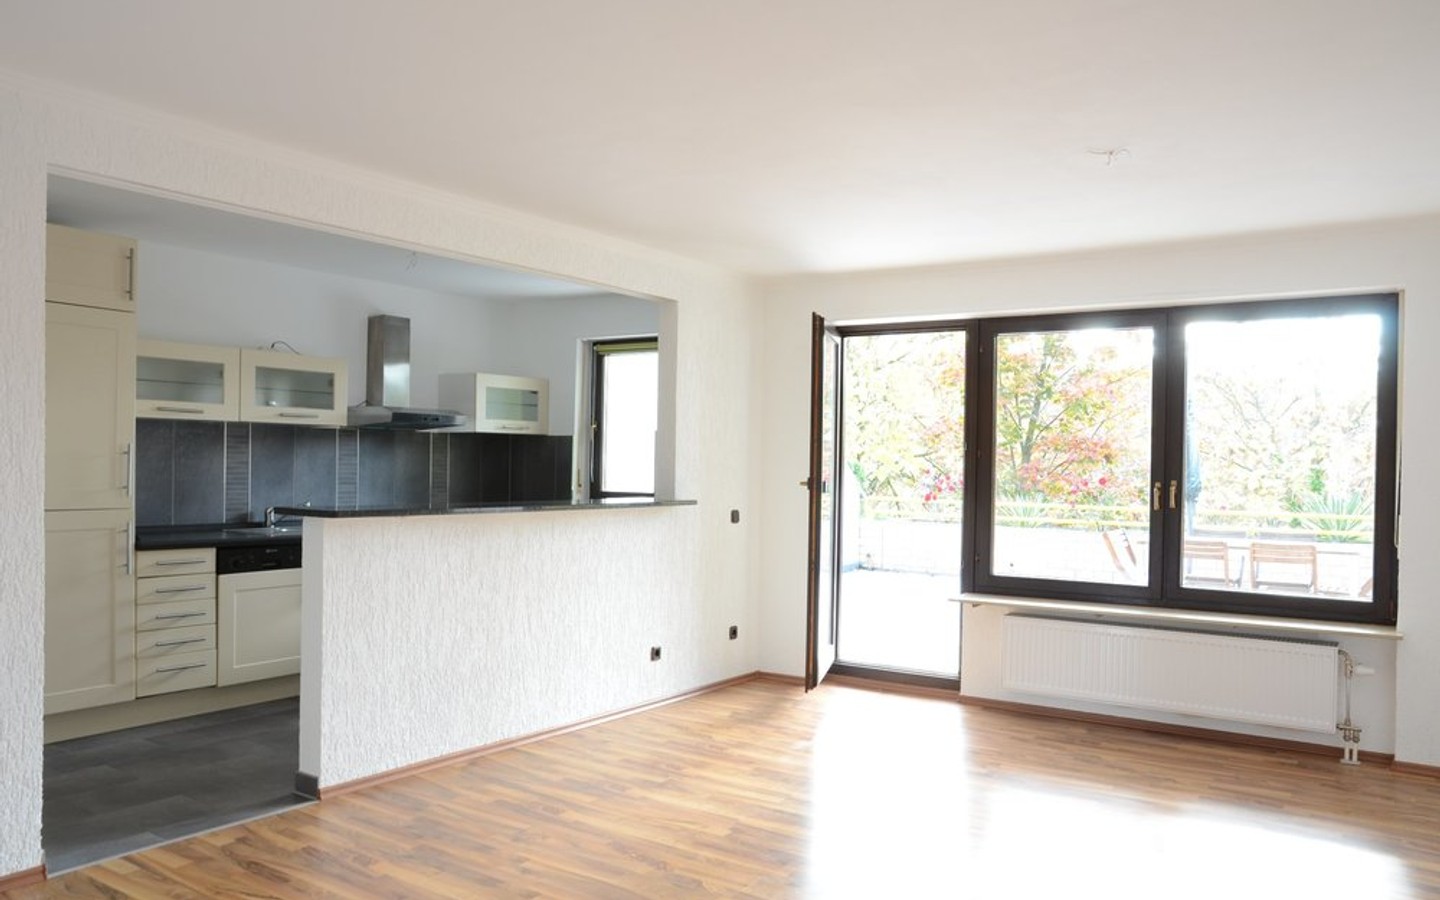 Wohnzimmer mit offener Küche - Sonne pur und viel Lebensqualität bietet Ihnen diese attraktive Dreizimmerwohnung